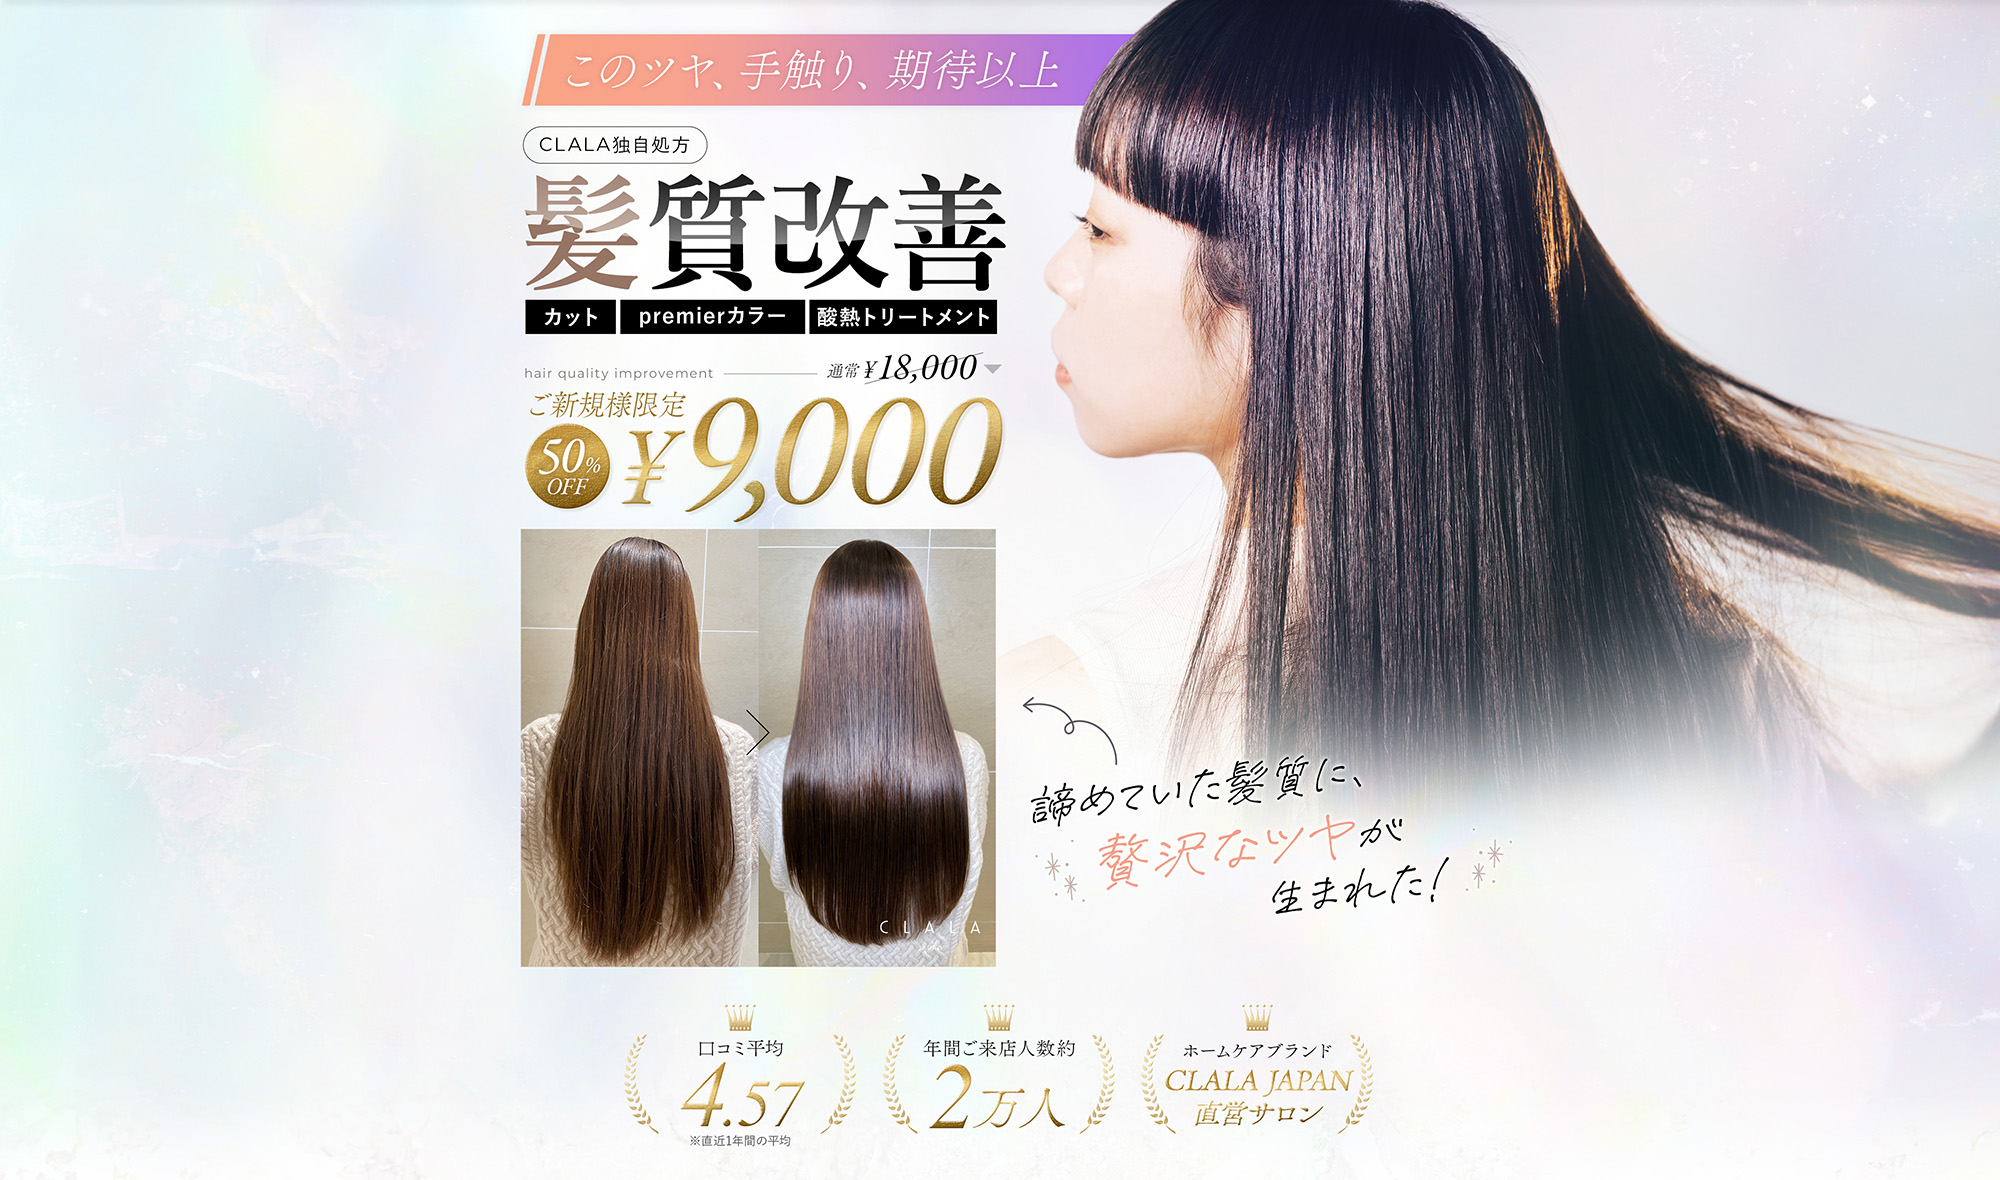 このツヤ、手触り、期待以上 CLALA独自処方 髪質改善 ご新規様限定 ¥9,000 カット premierカラー 酸熱リートメント